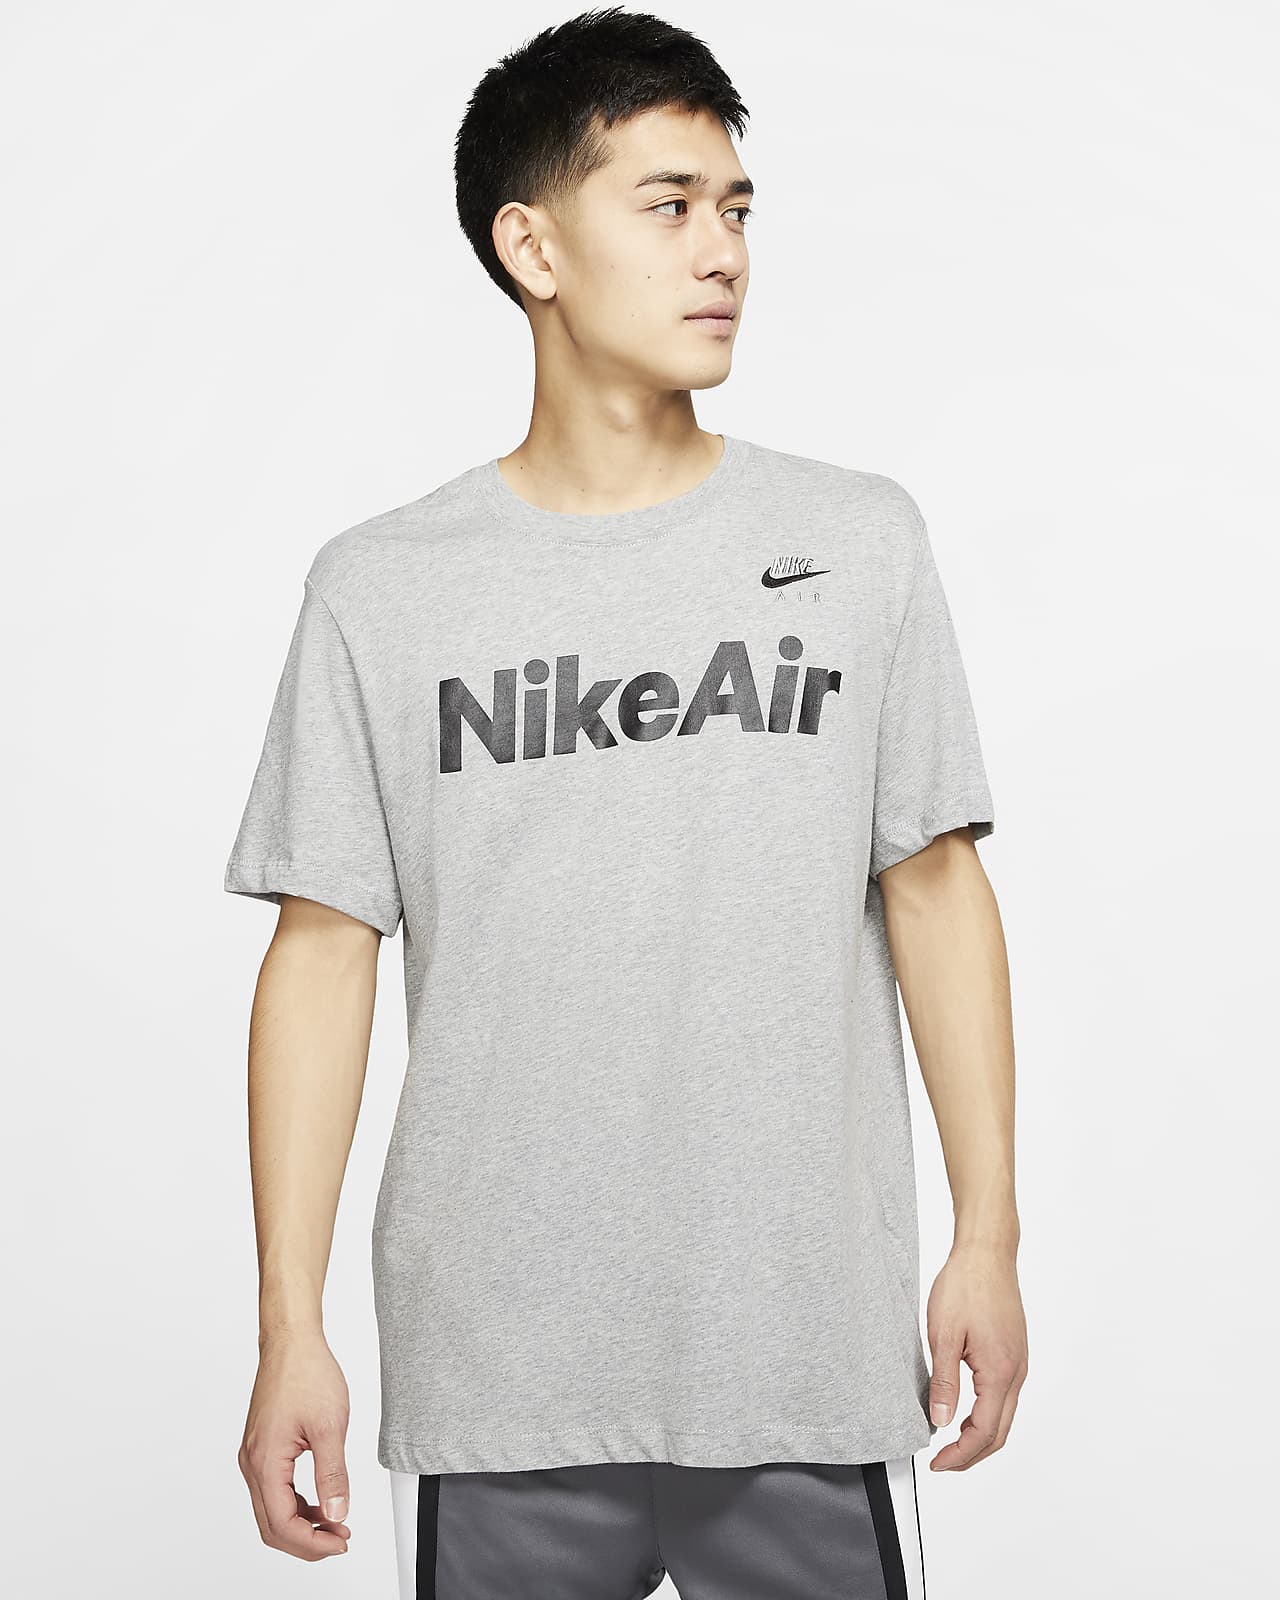 Nike Air Men's T-Shirt. Nike CA